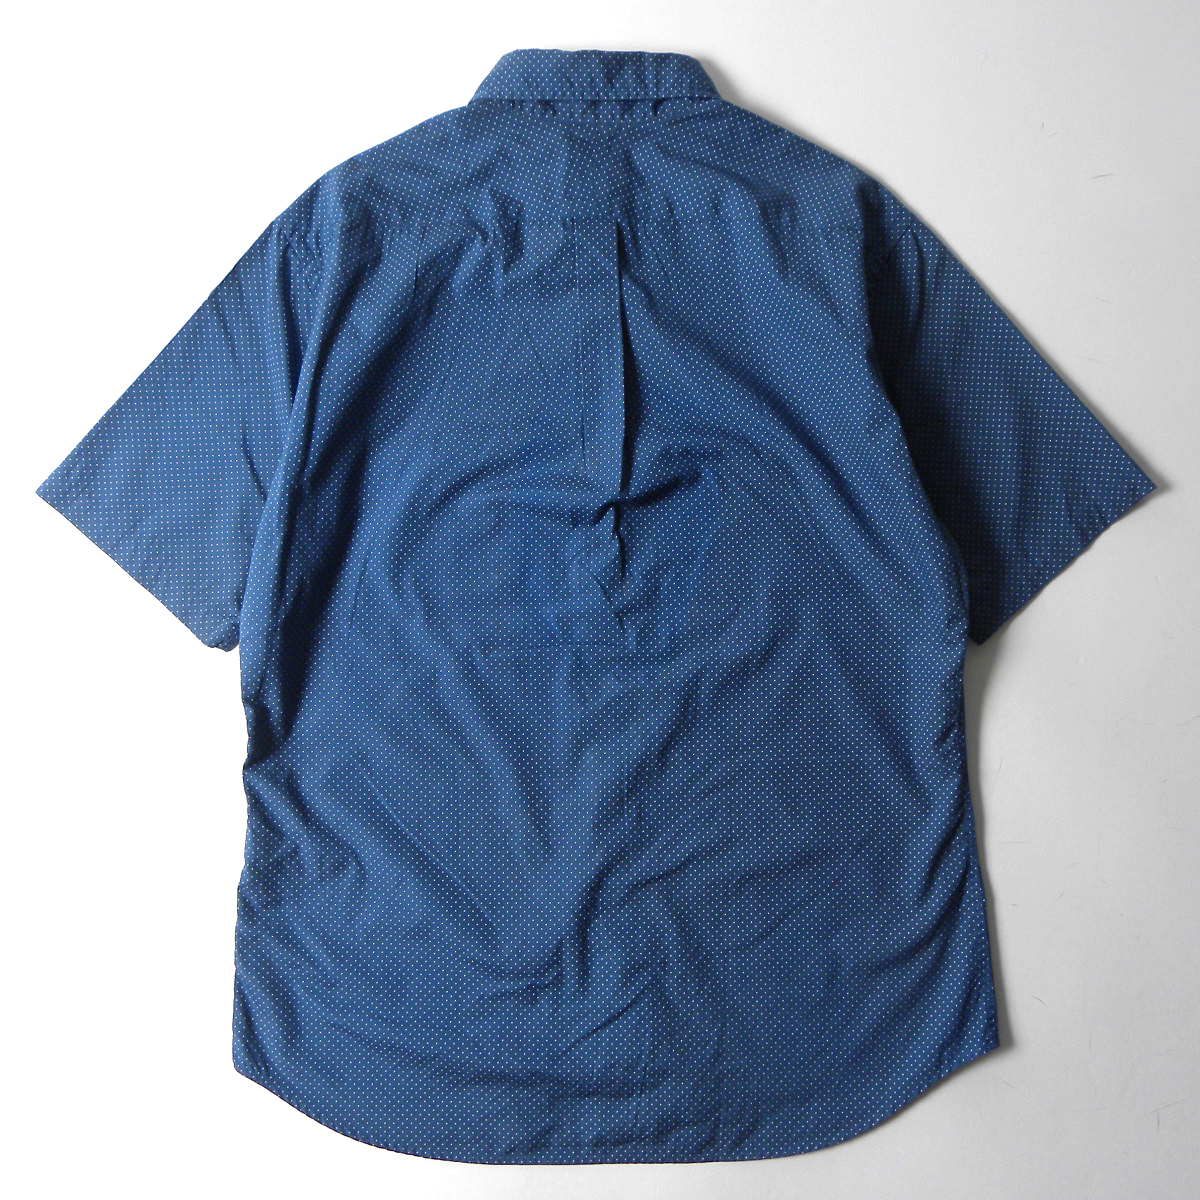 ユナイテッドアローズ BEAUTY＆YOUTH コットン100% ドット柄シャツ 半袖 防縮加工 L ブルー 手洗い可 日本製 m0410-12の画像2